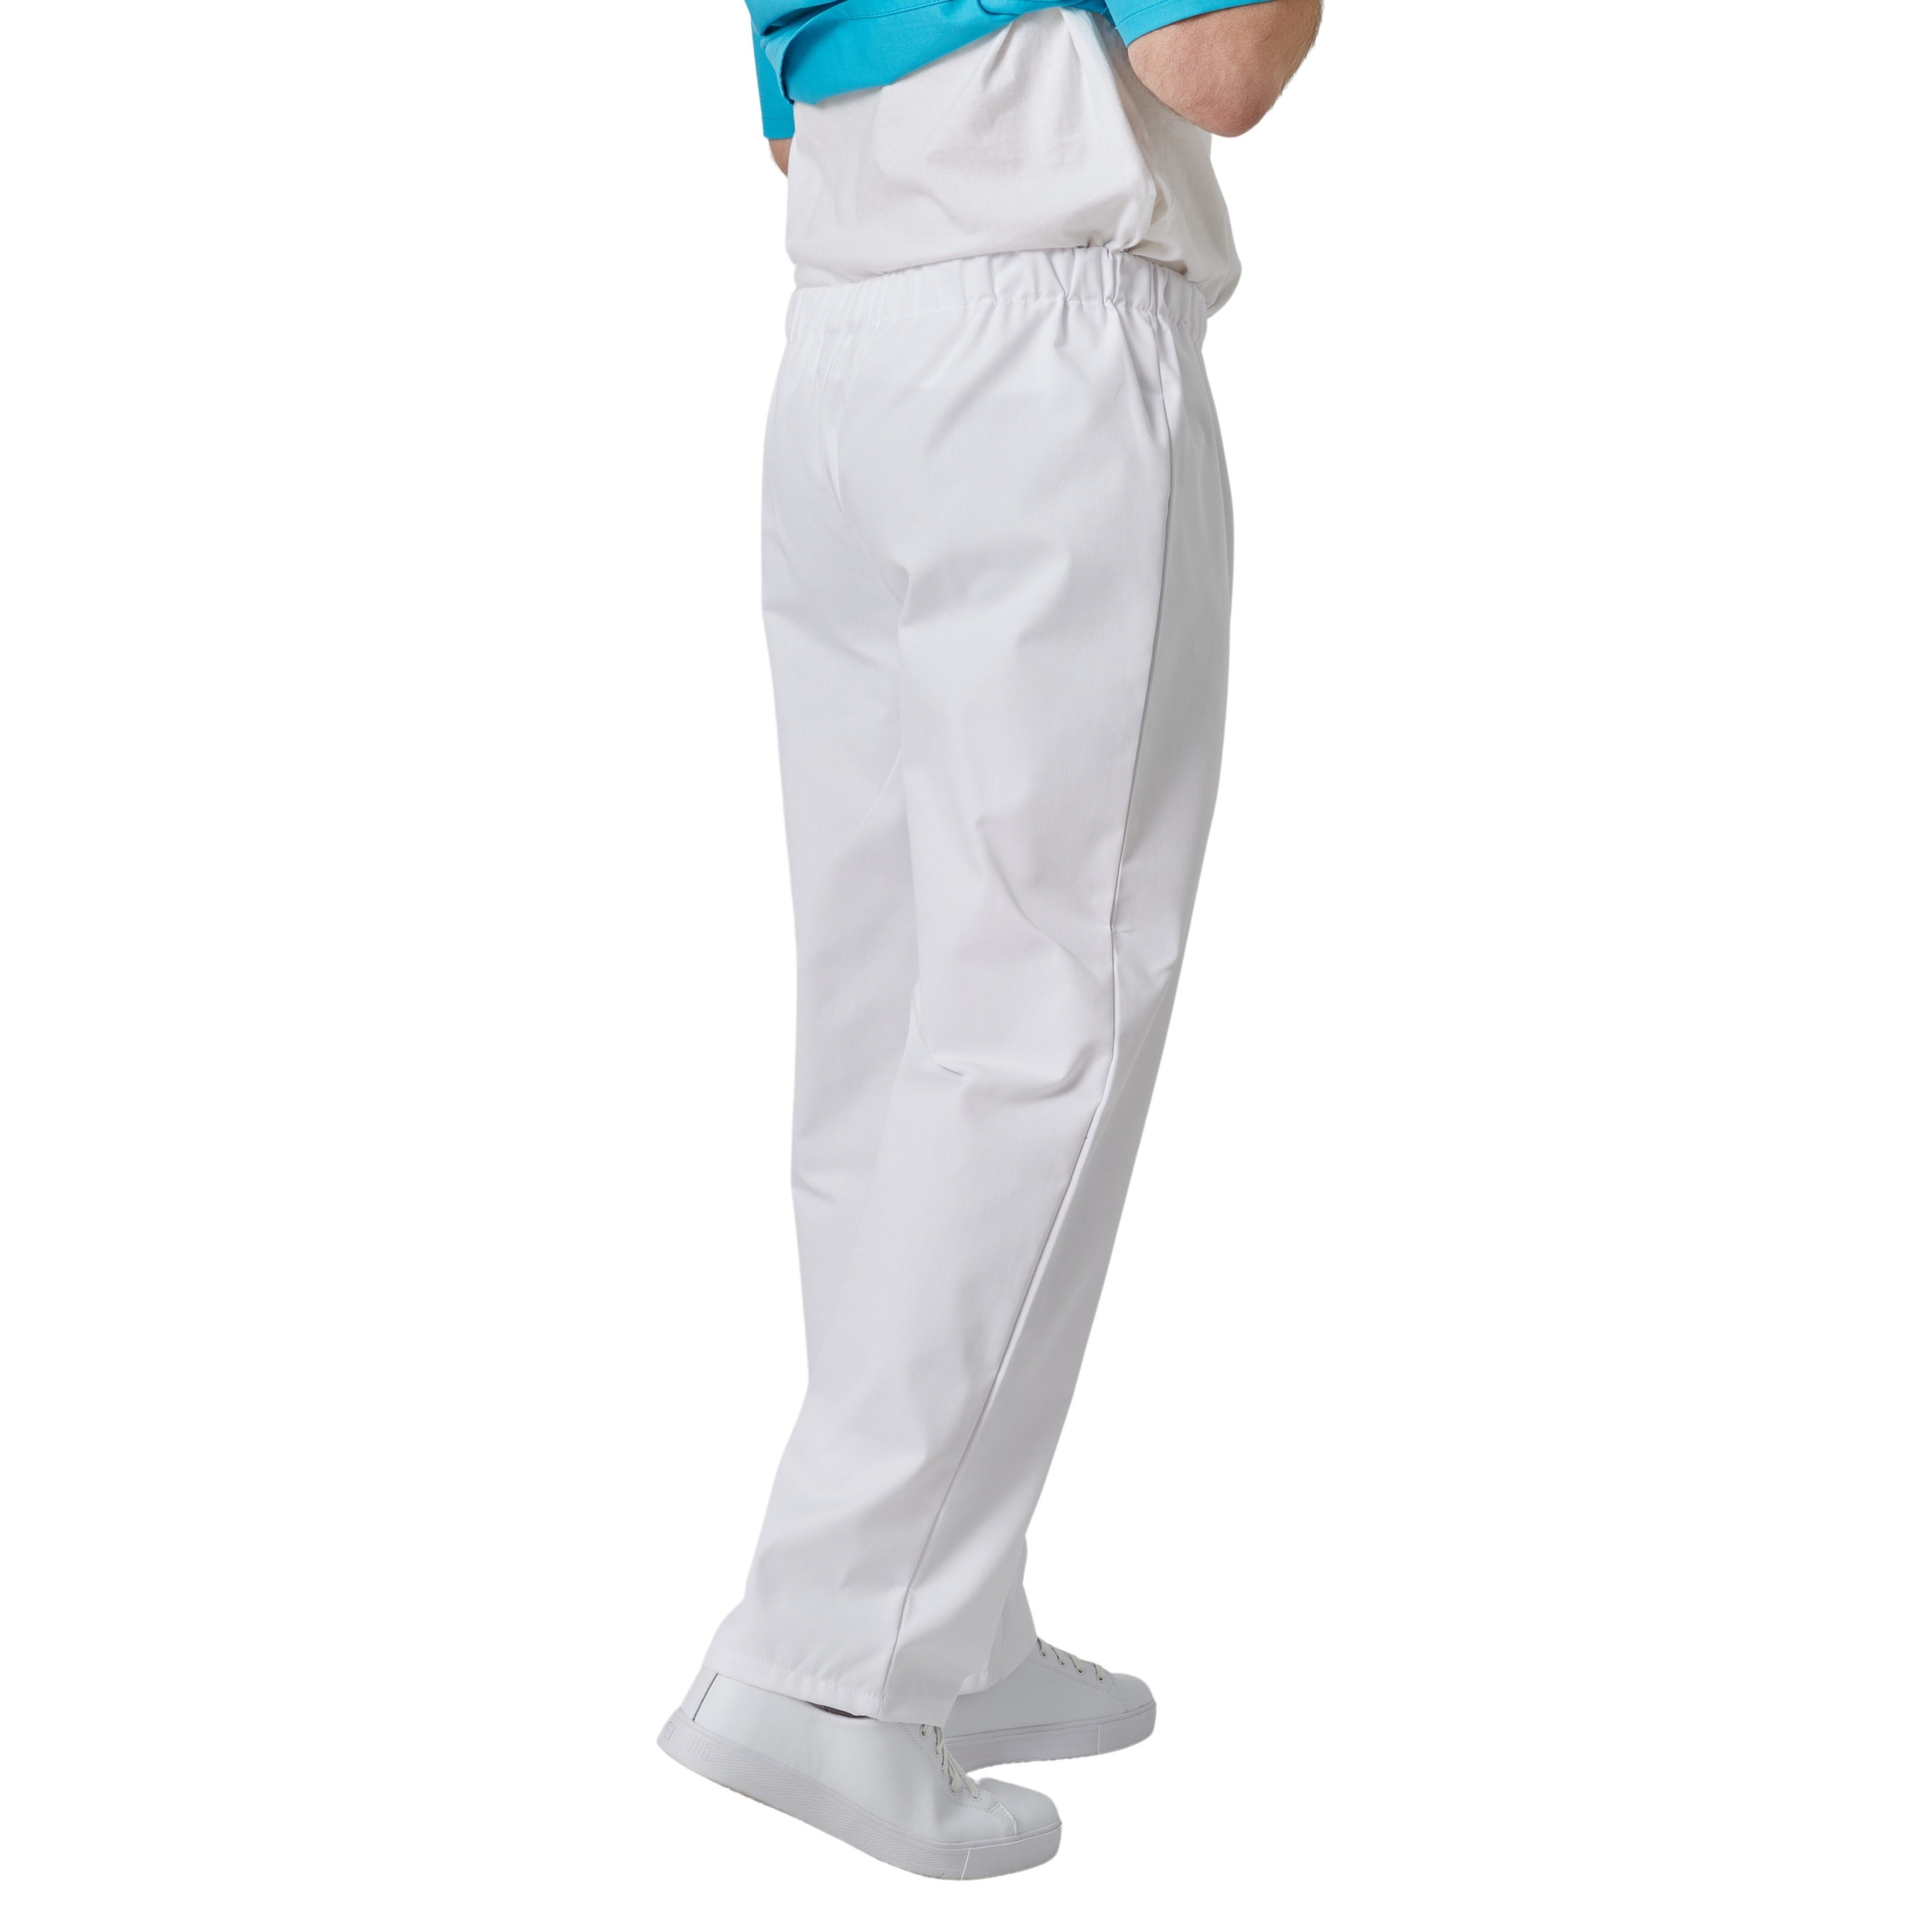 Pantalon de travail hospitalier pour infirmière et aide soignante blanc